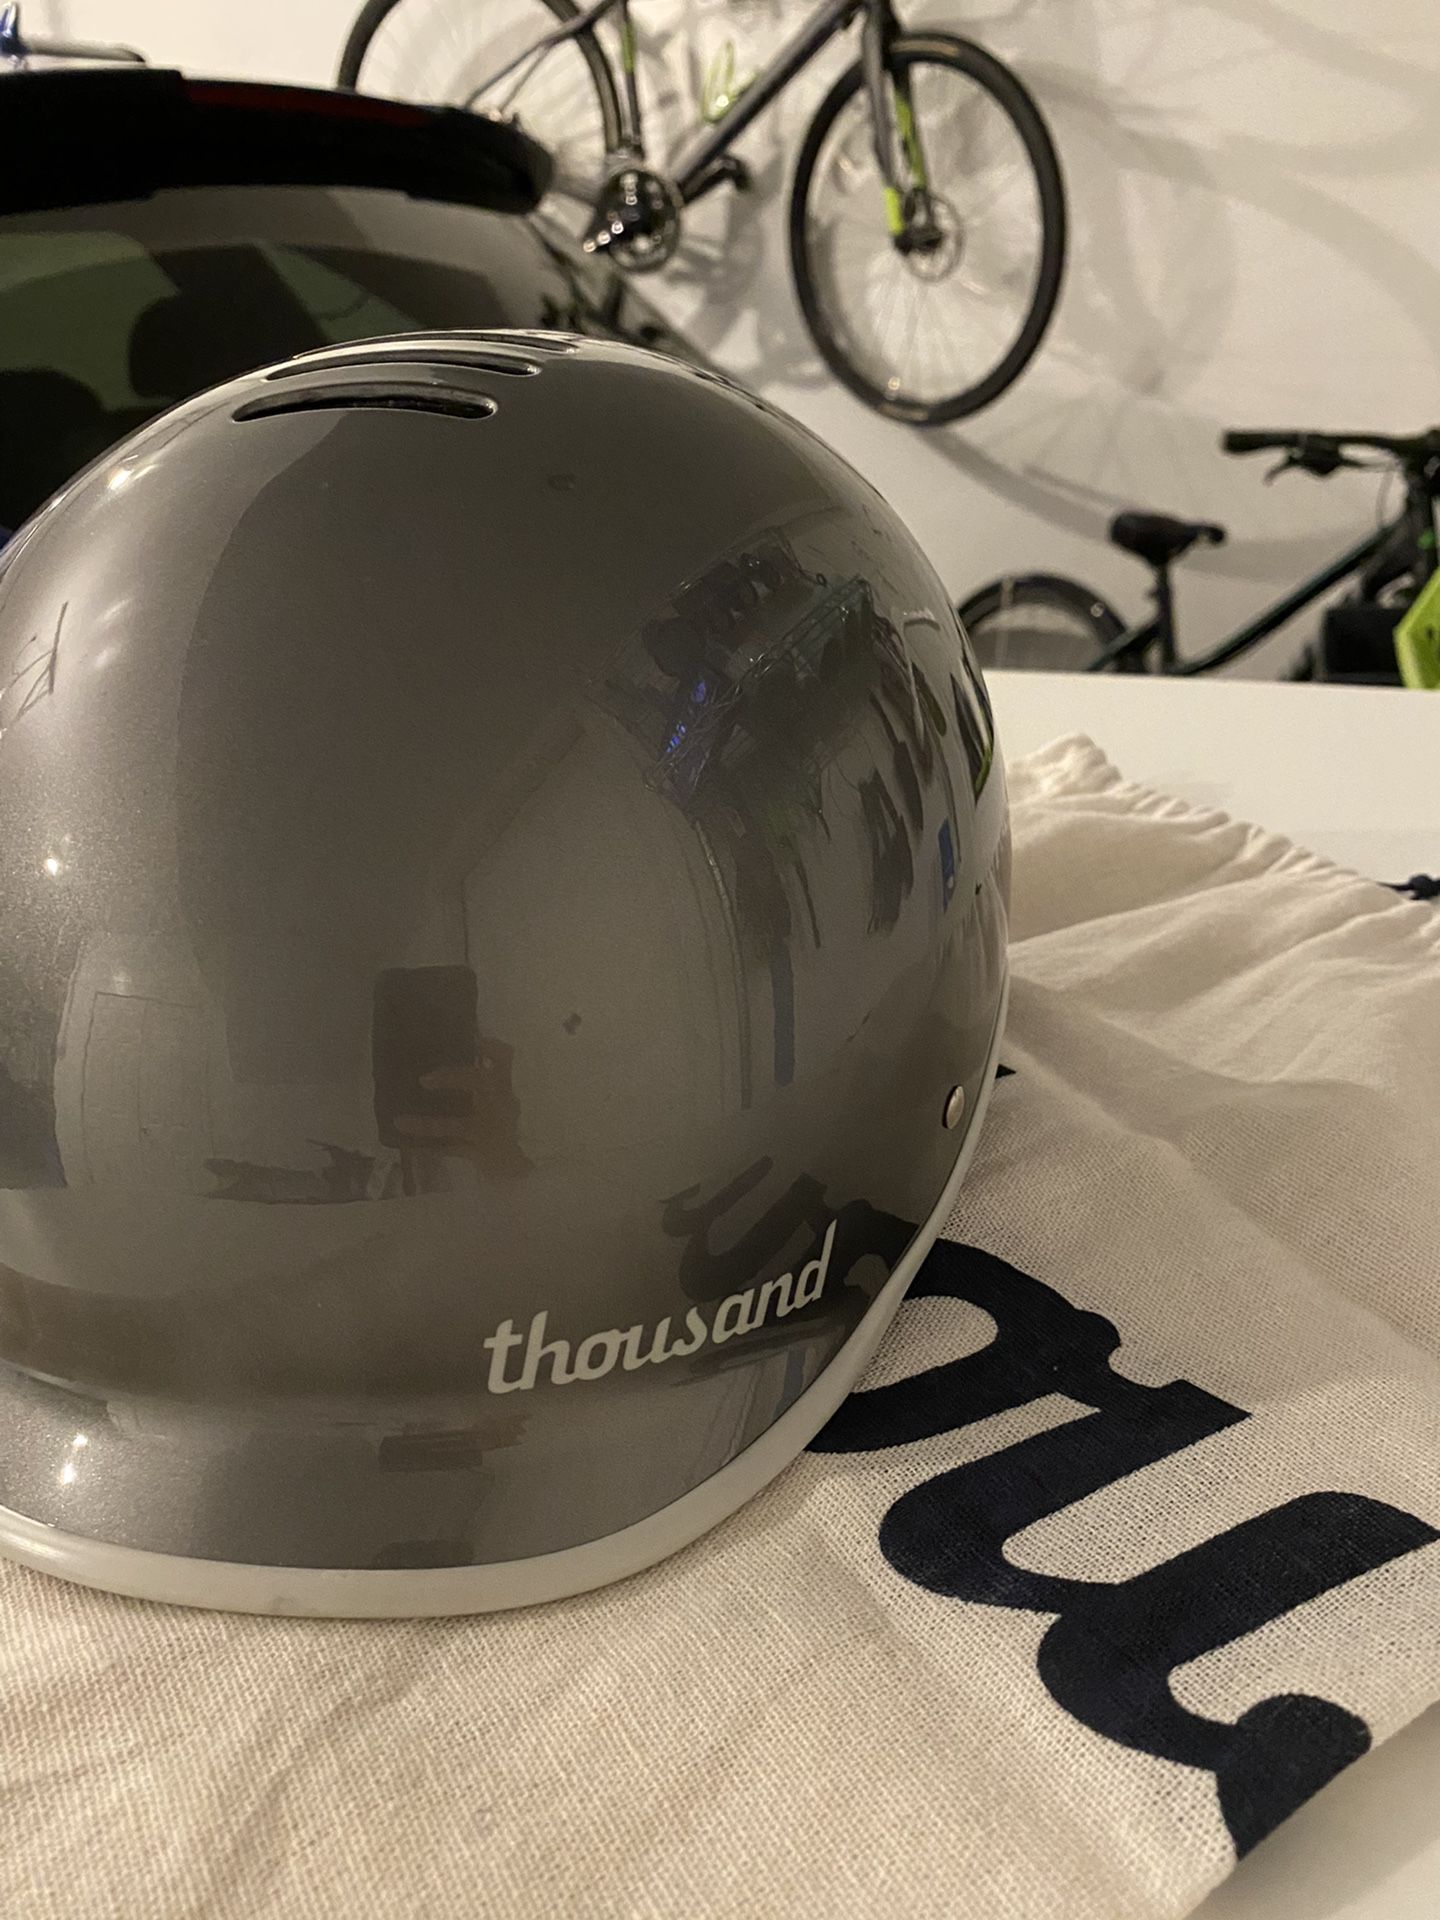 Thousand Heritage Bike Helmet